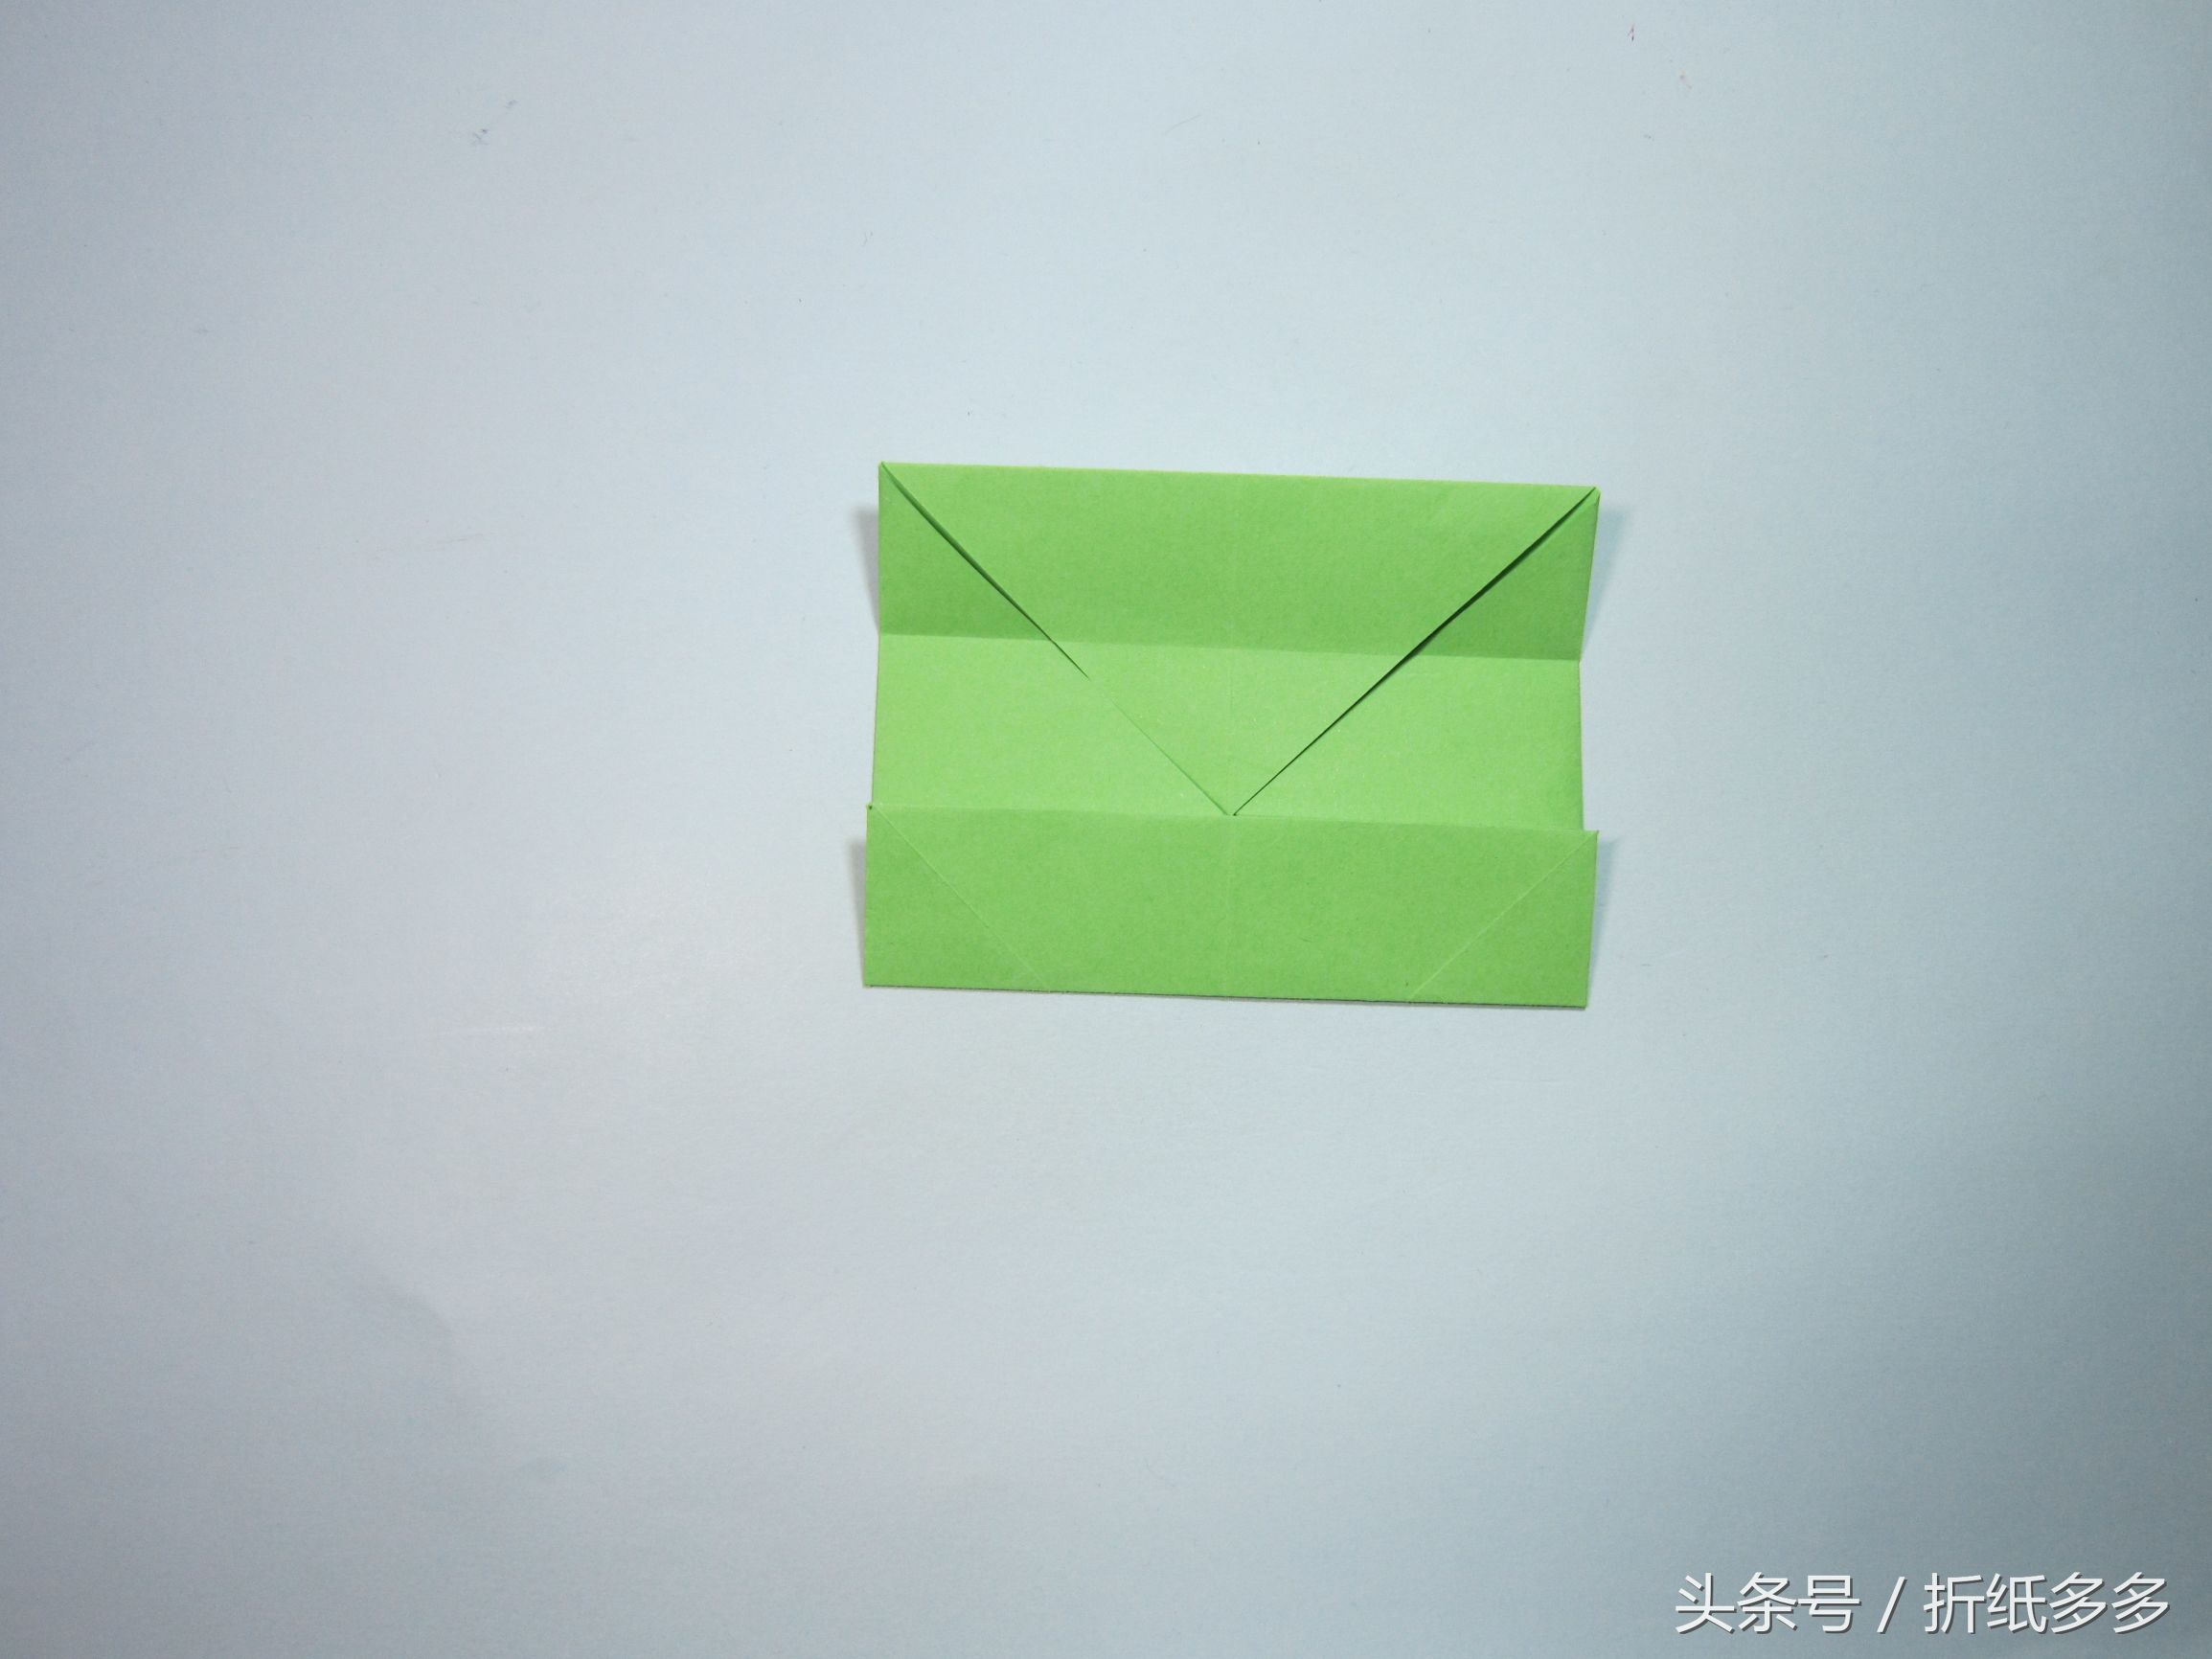 儿童手工折纸教程:正方形收纳盒的折法步骤图解